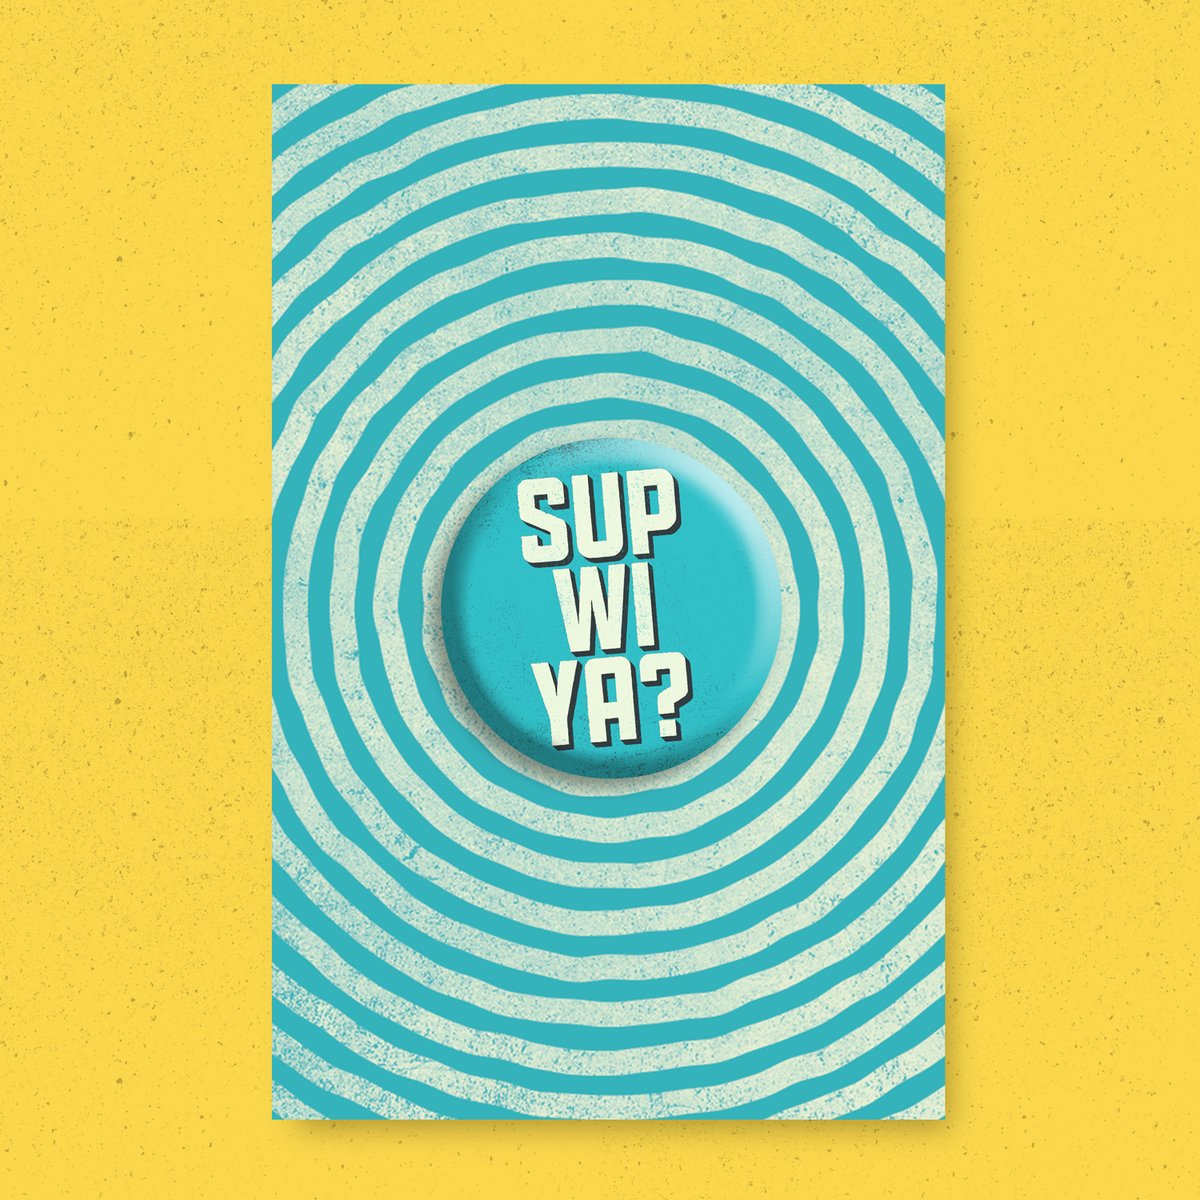 Sup Wi Ya?